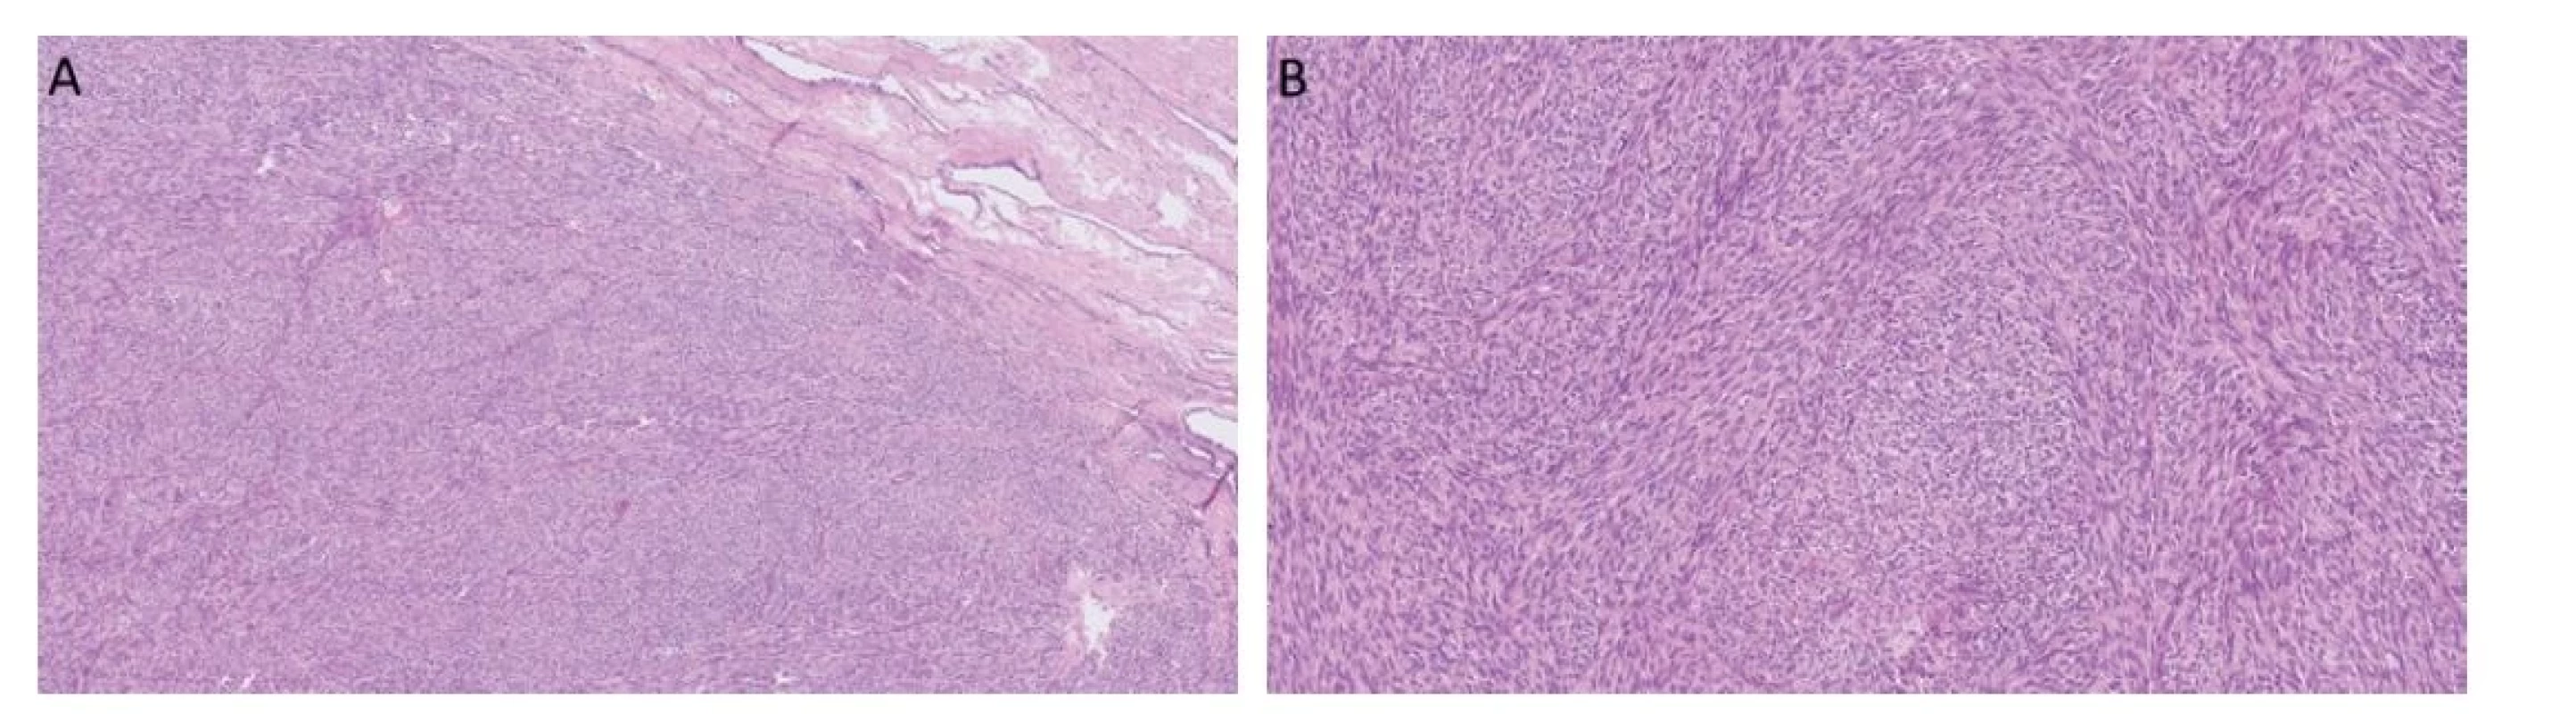 Myoidní gonadální stromální tumor roste solidně, je celulární a často se vyskytuje v blízkosti rete testis (A). Nádorové buňky jsou vřetenité
a fascikulárně uspořádané (B).